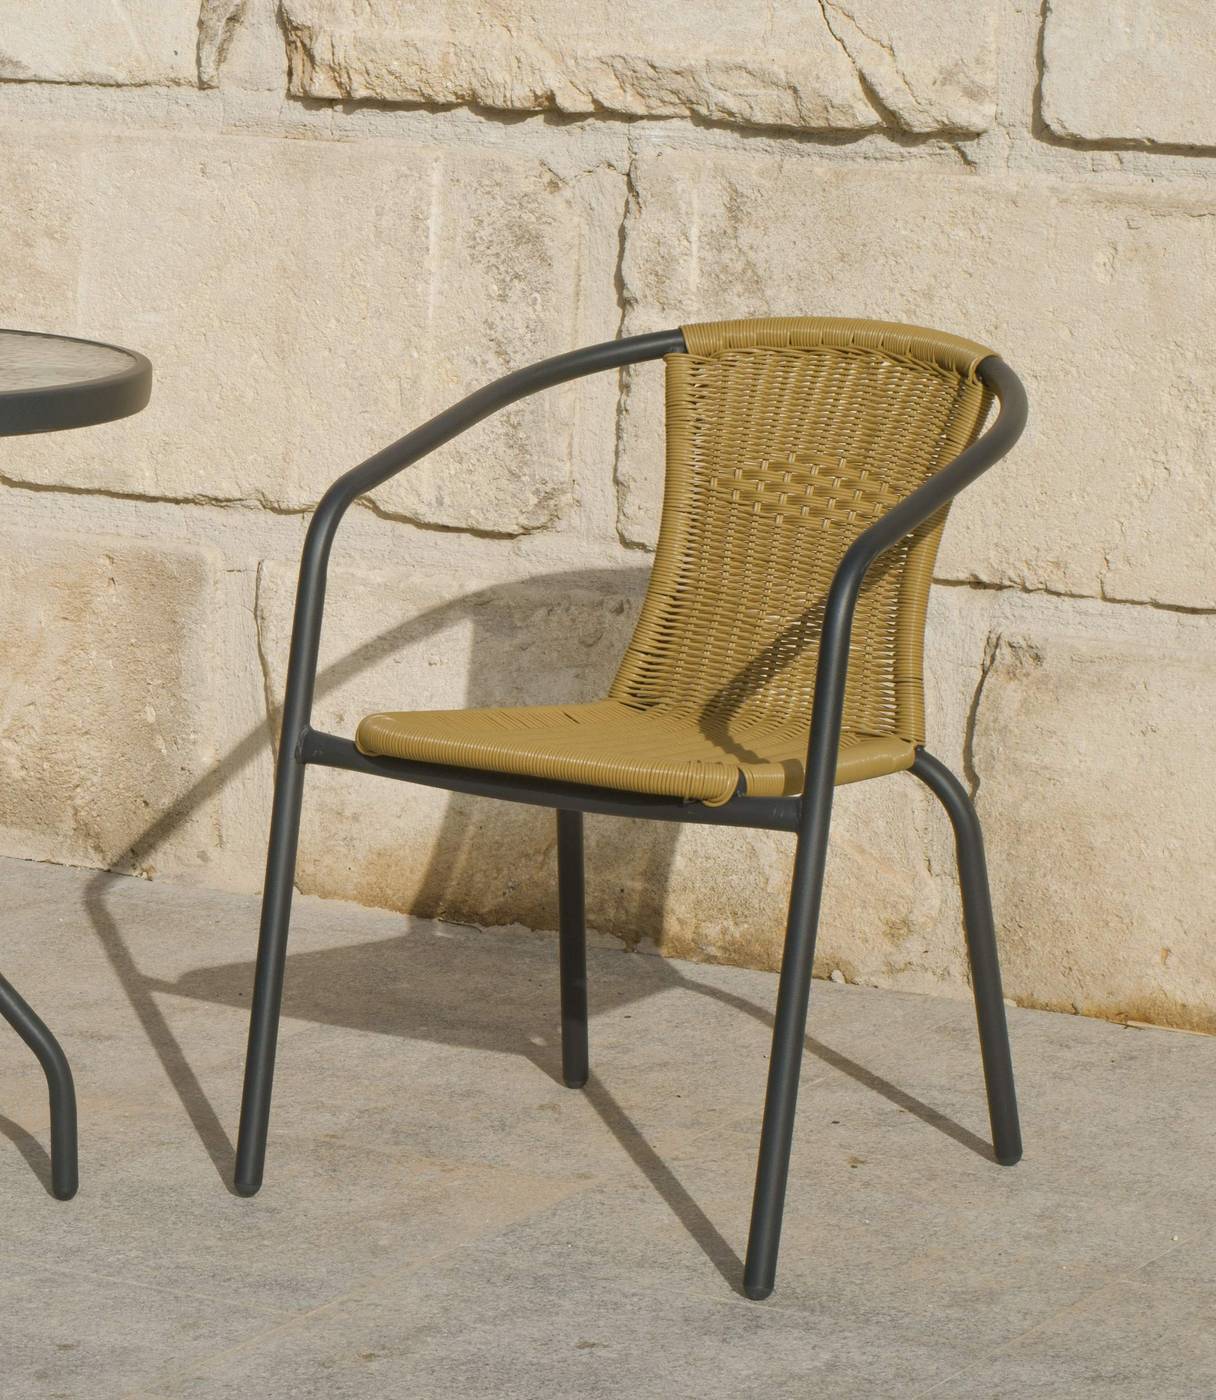 Conjunto Acero Valencia 90-4 - Conjunto de acero color antracita: mesa con tablero de cristal templado de 90 cm. + 4 sillones de acero y wicker sintético